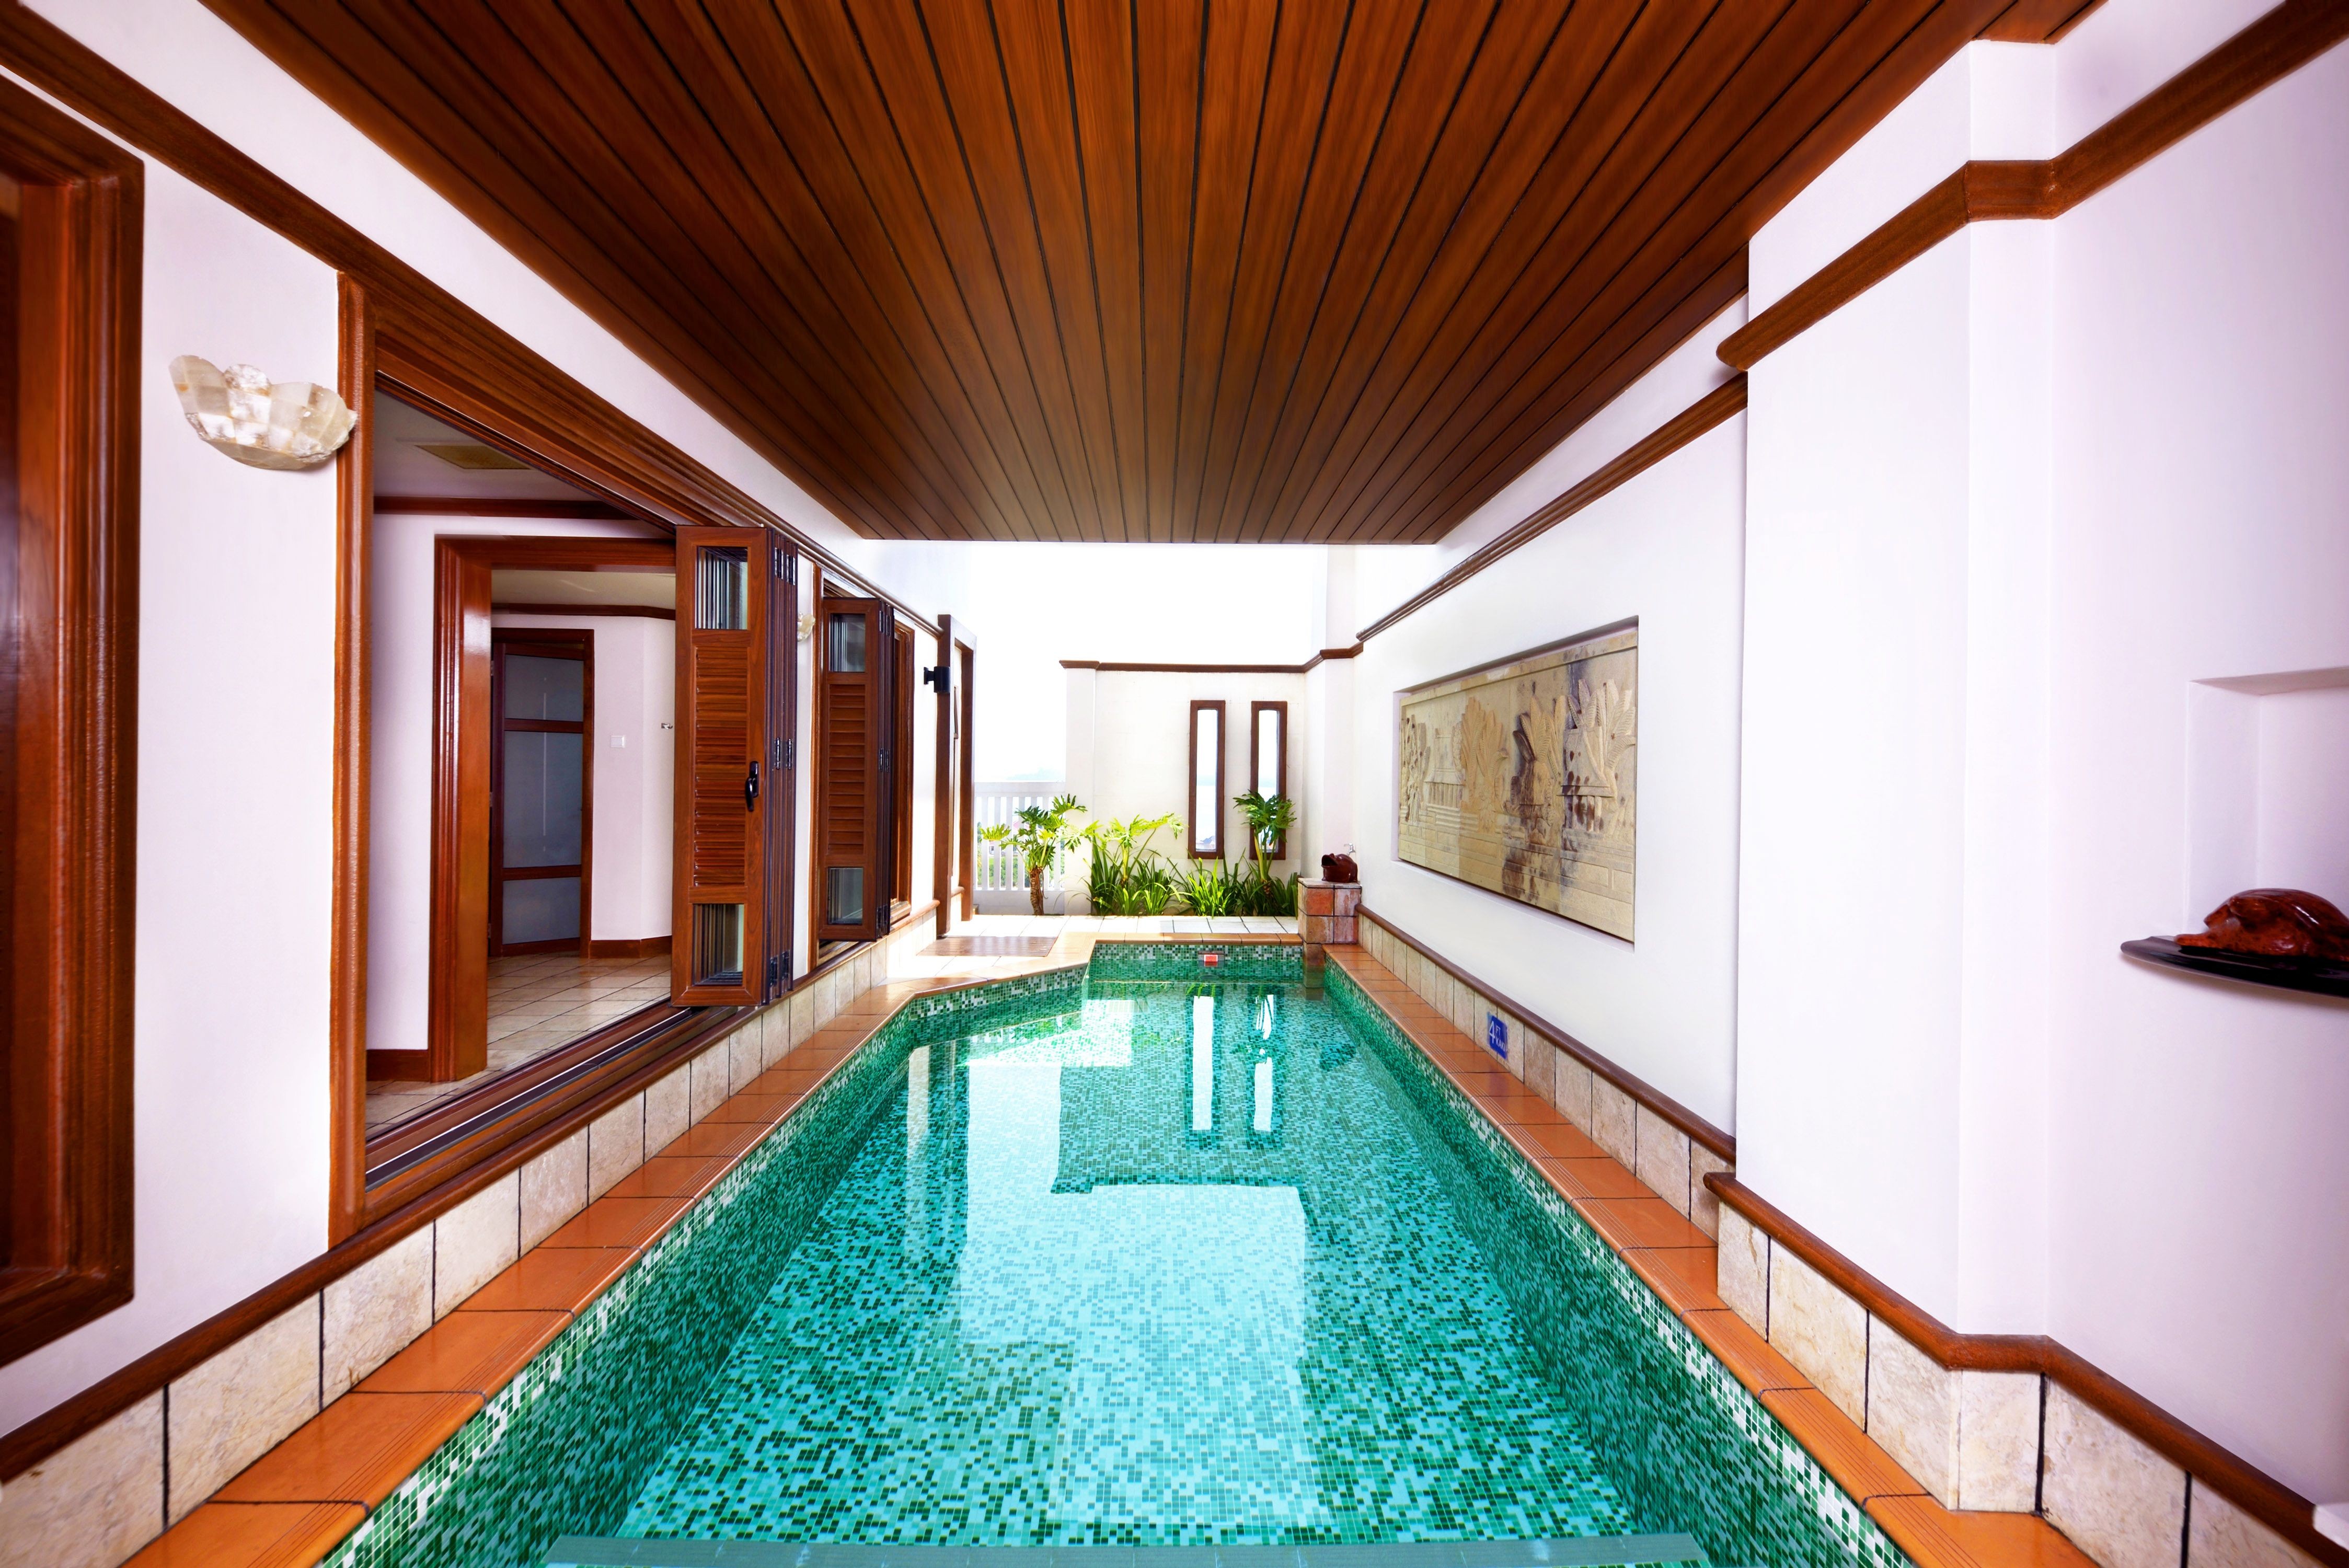 O hotel conta com uma piscina interna que é acessada pelos quartos (Foto: Reprodução / Booking.com)